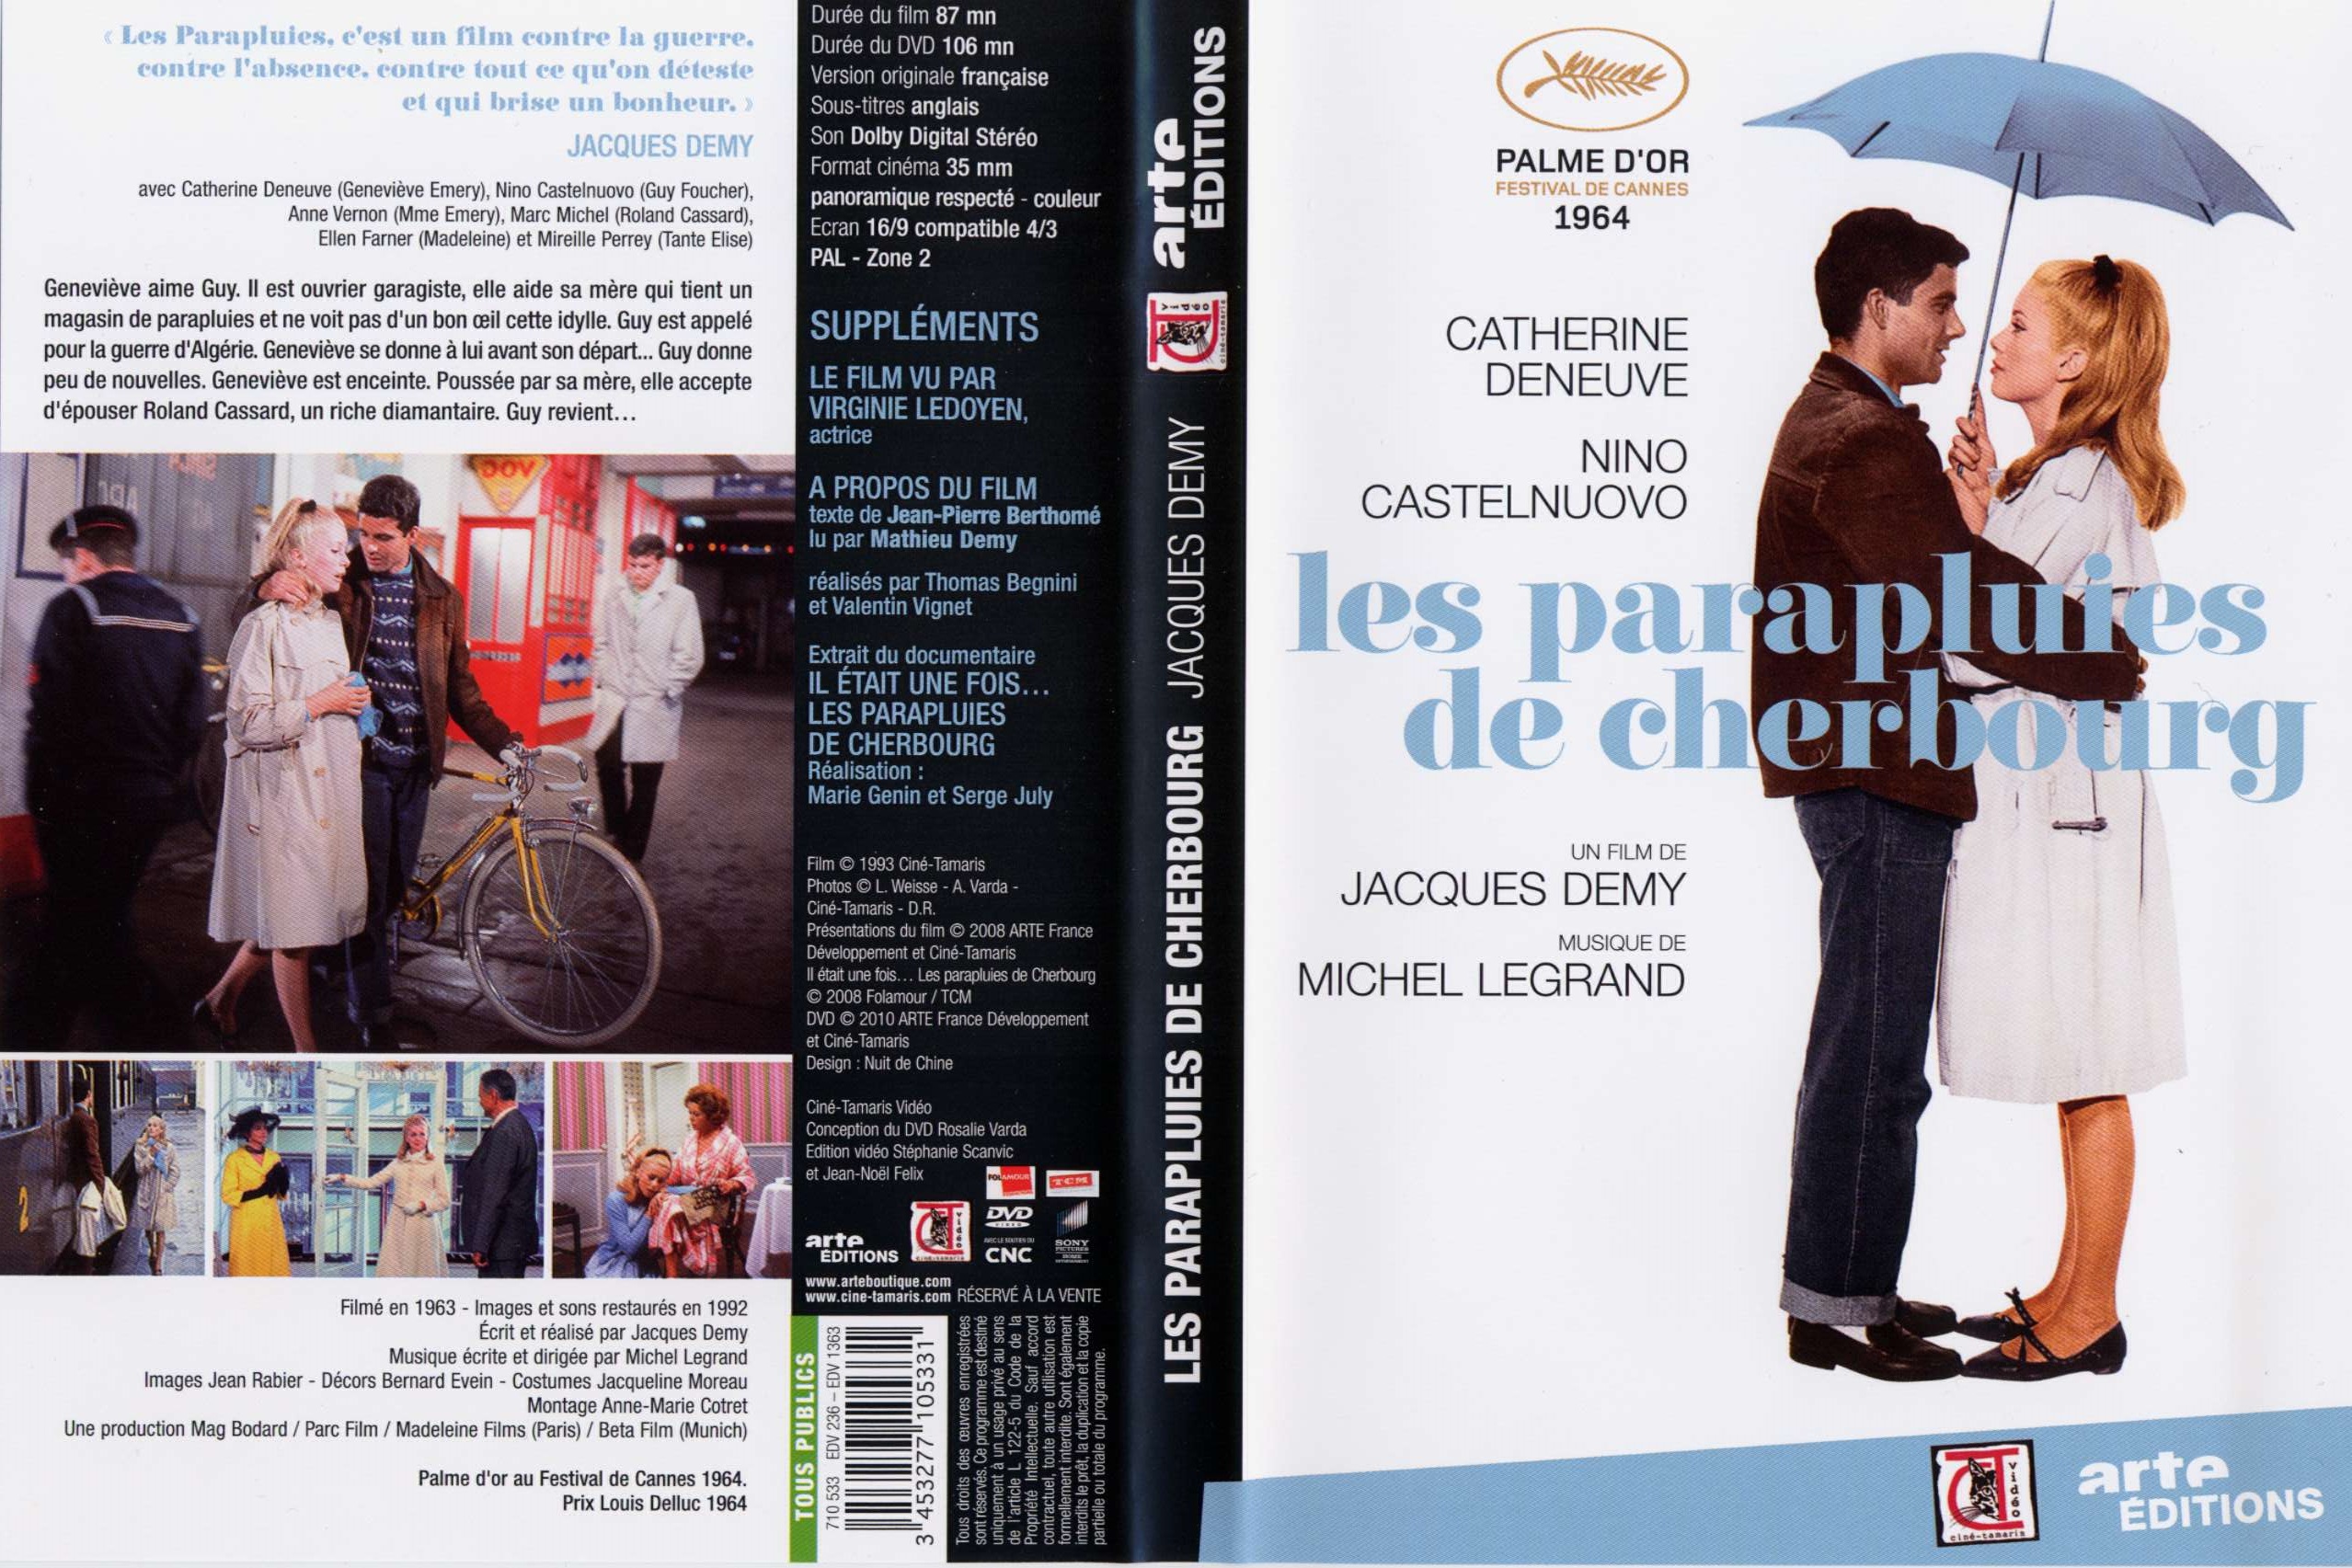 Jaquette DVD Les Parapluies de Cherbourg v2